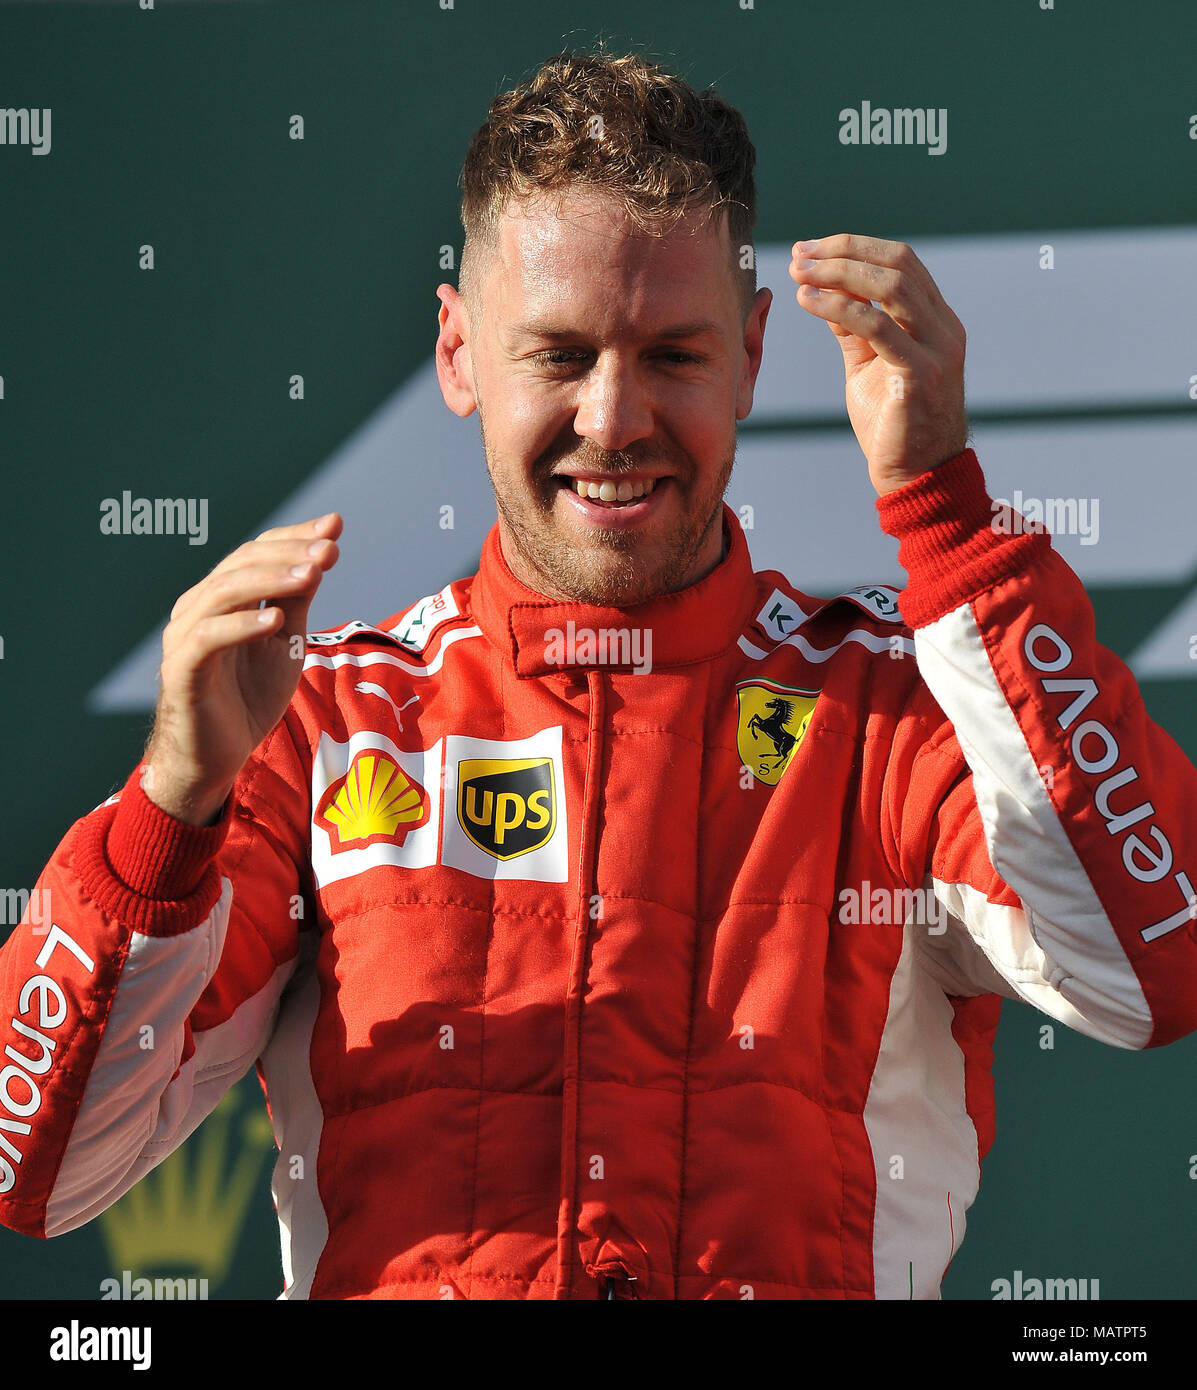 Gara vincitore Sebastian Vettel della Scuderia Ferrari. Il giorno 4, il giorno di gara del 2018 Formula 1 Rolex Australian Grand Prix che si svolgerà sul circuito di Albert Park di Melbourne, Victoria il 25 marzo 2018. Foto Stock